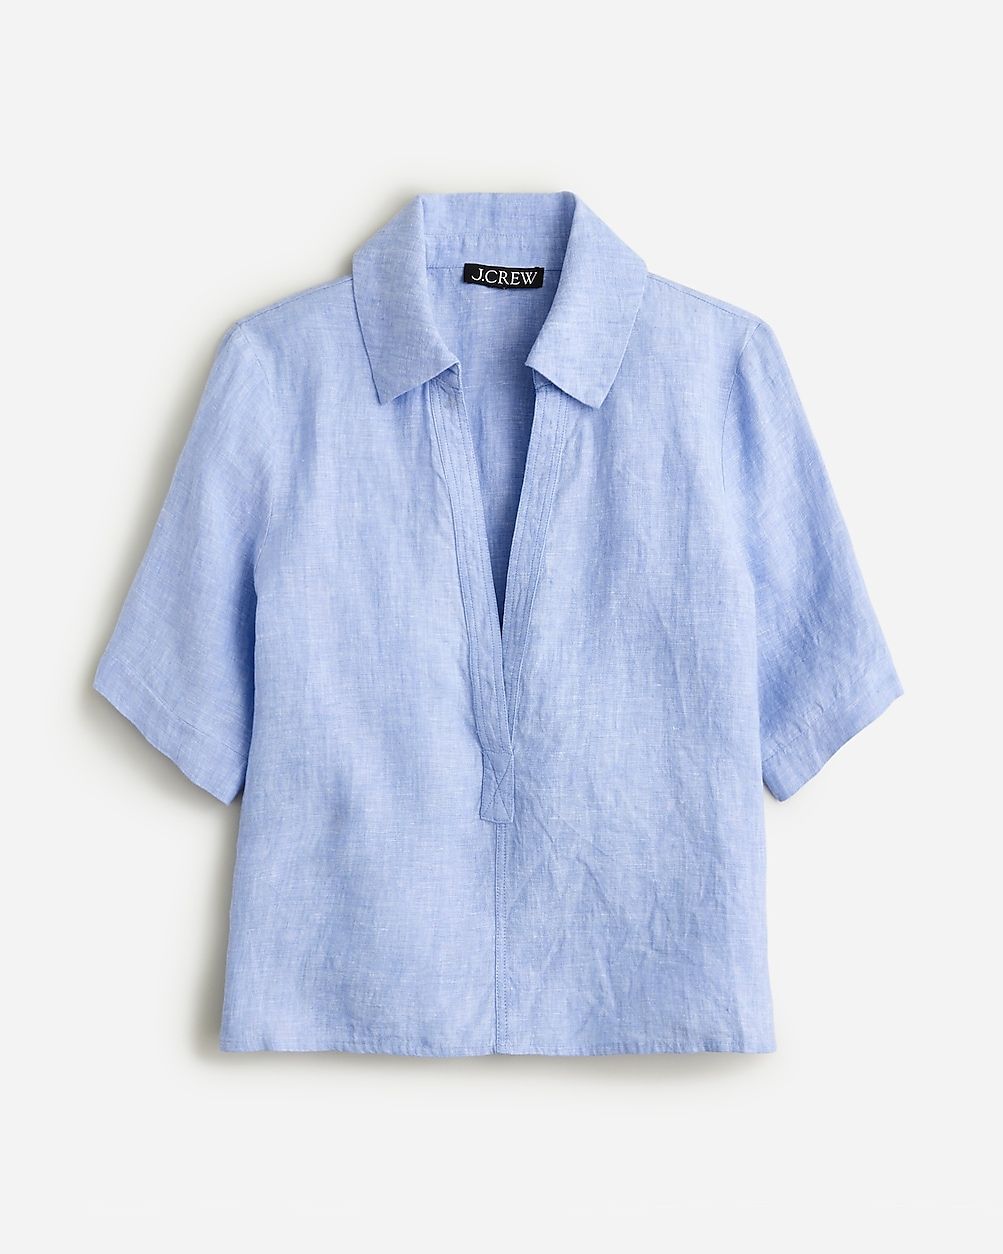 V-neck popover shirt in linen | J.Crew US